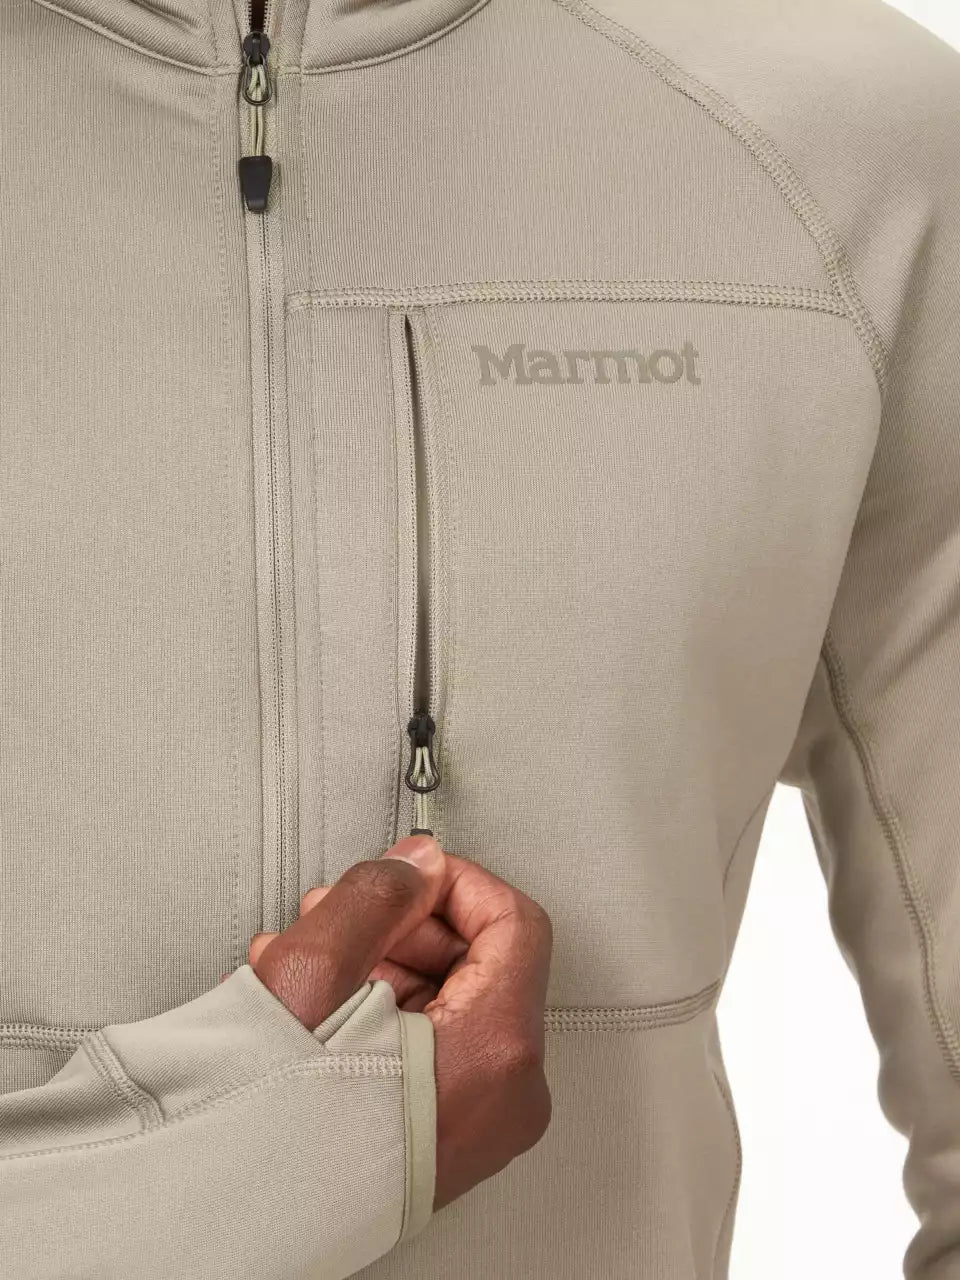 Marmot - Men's Olden Polartec 1/2-zip Jacket